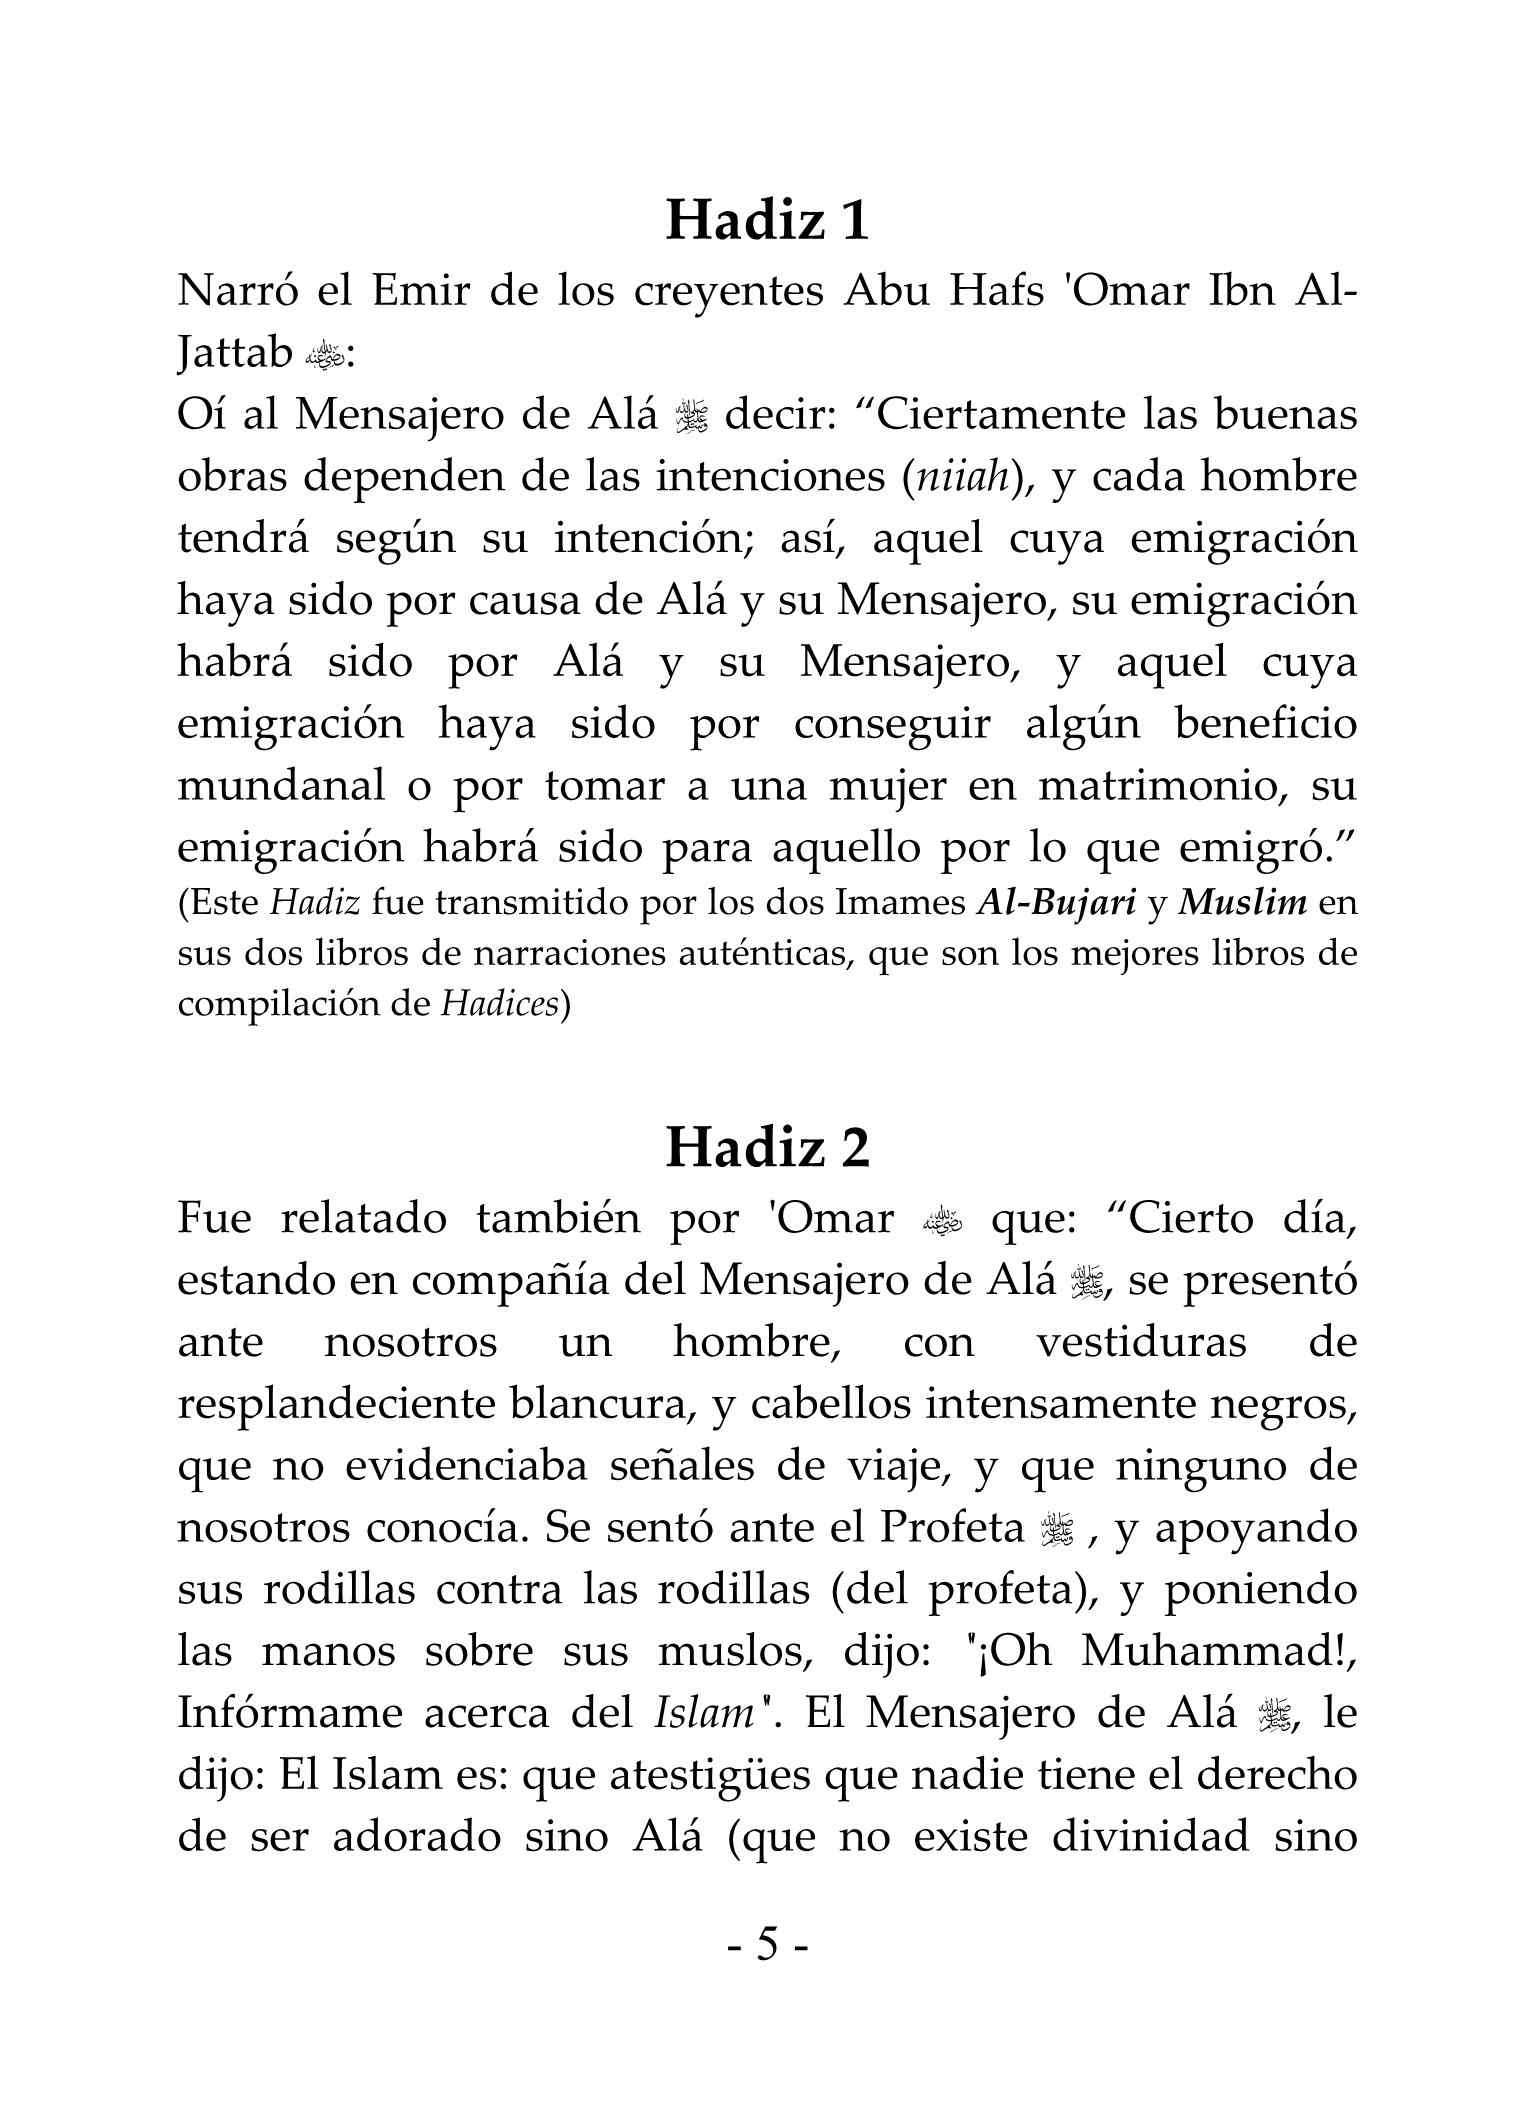 إسباني - الأربعون النووية - Los Cuarenta Hadices.pdf, 25-Sayfa 